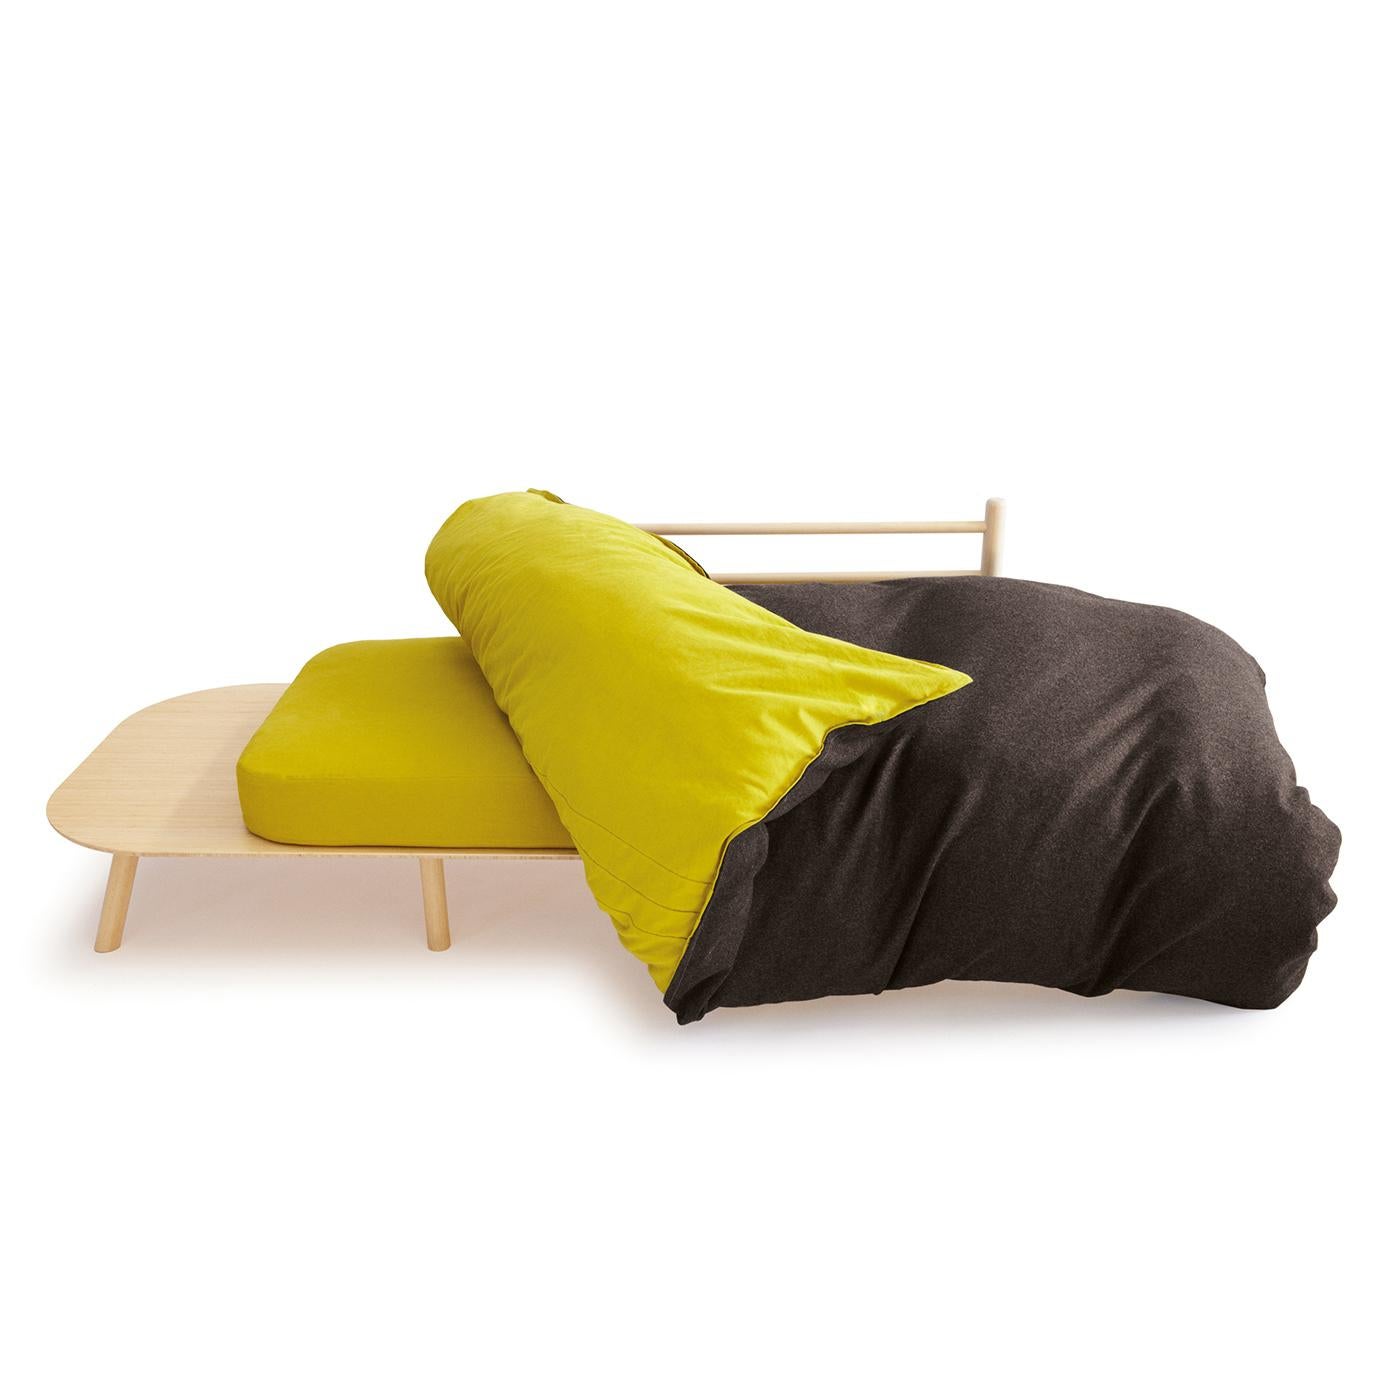 Das Disfatto Sofa von Dennis Guidone ist eine reizvolle Kombination aus Sitzfläche, Kissen und Entspannungsparadies. Es ist außergewöhnlich bequem und verspielt. Die natürliche Polsterung ist mit einem abnehmbaren Bezug aus einer